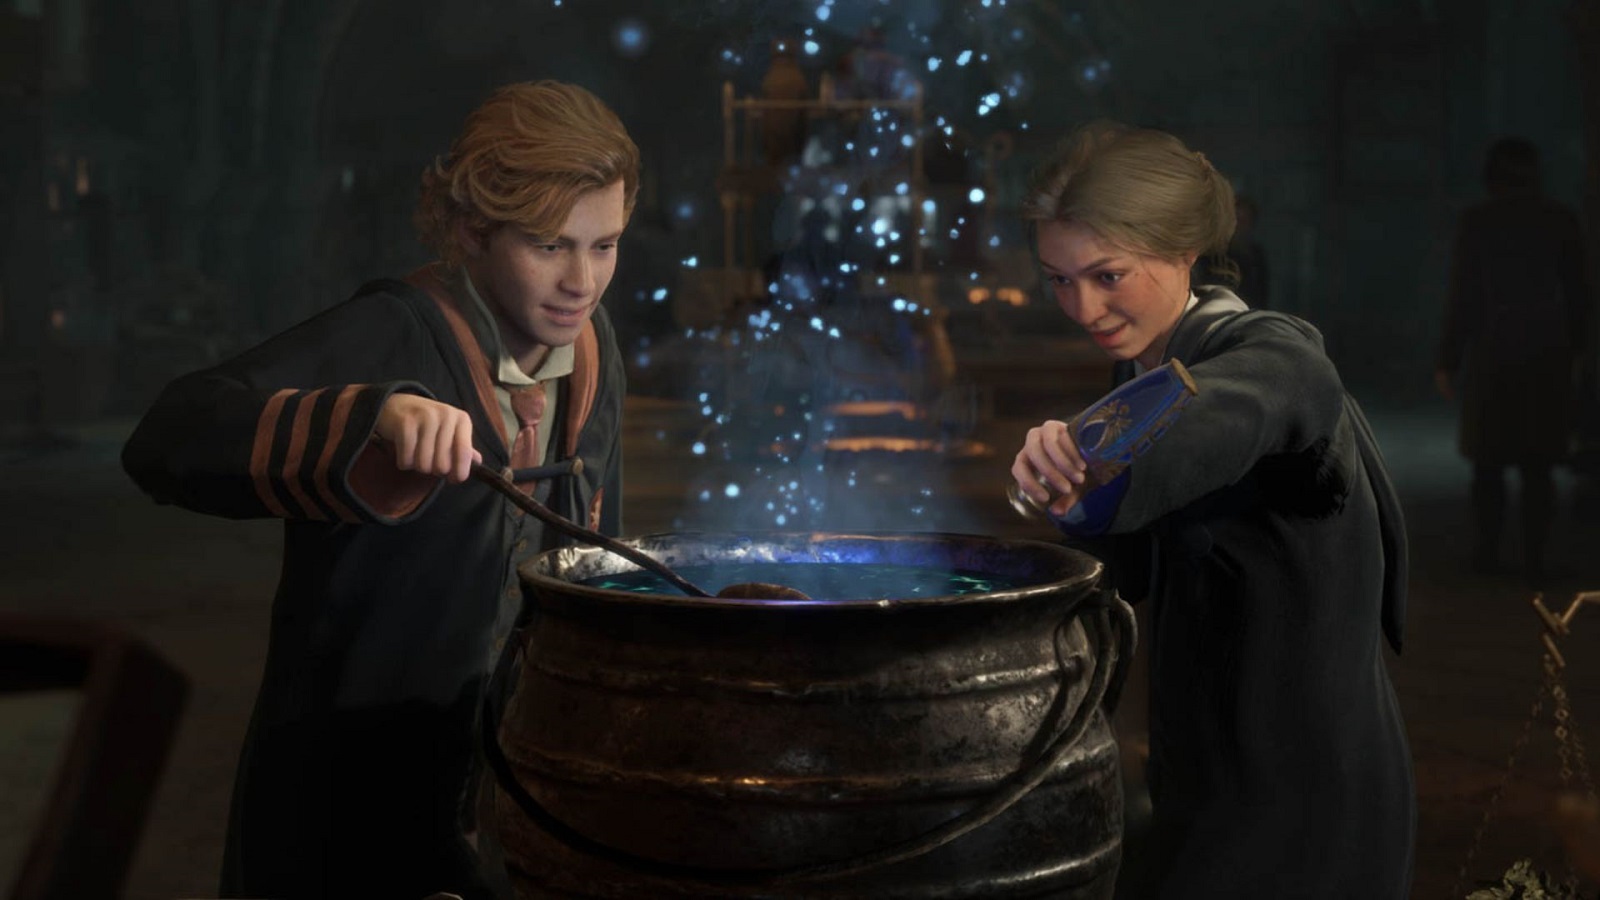 हॉगवर्ट्स विरासत में एक औषधि को तैयार करने वाले दो जादूगर।